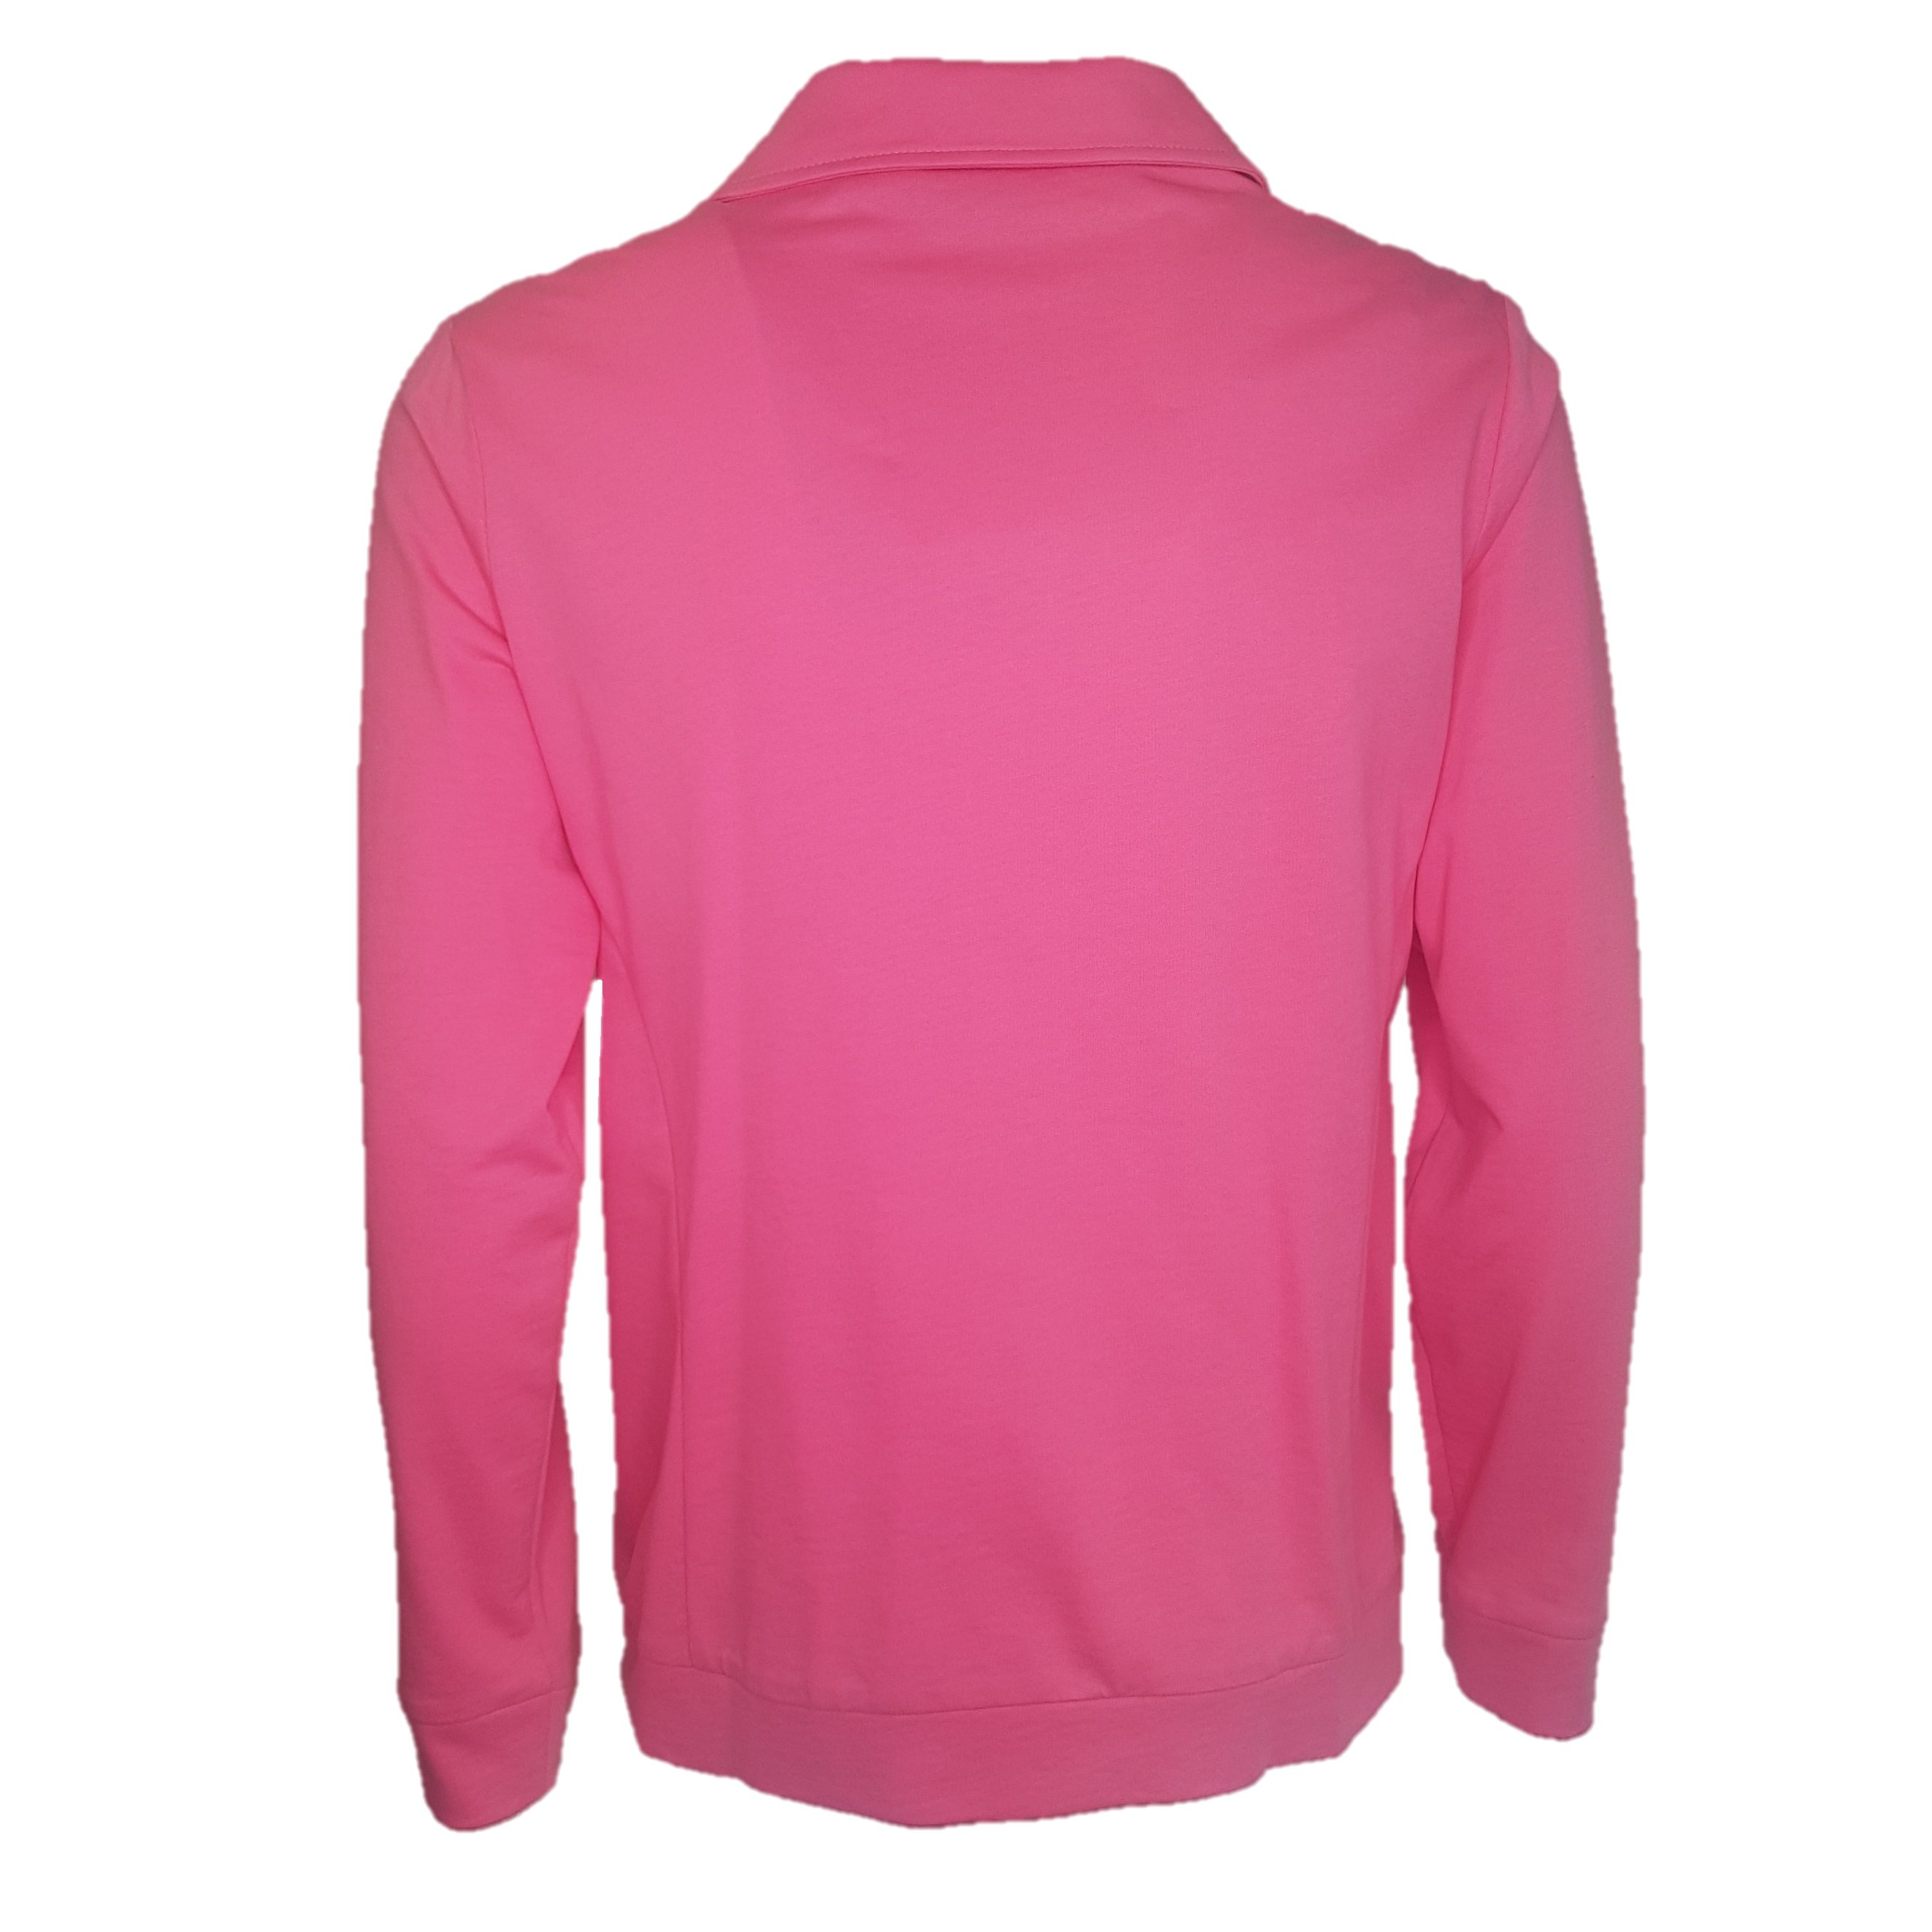 Pink Damen und aus Baumwolle 100% Klein Freizeitjacke Authentic Sport- Sweatjacke